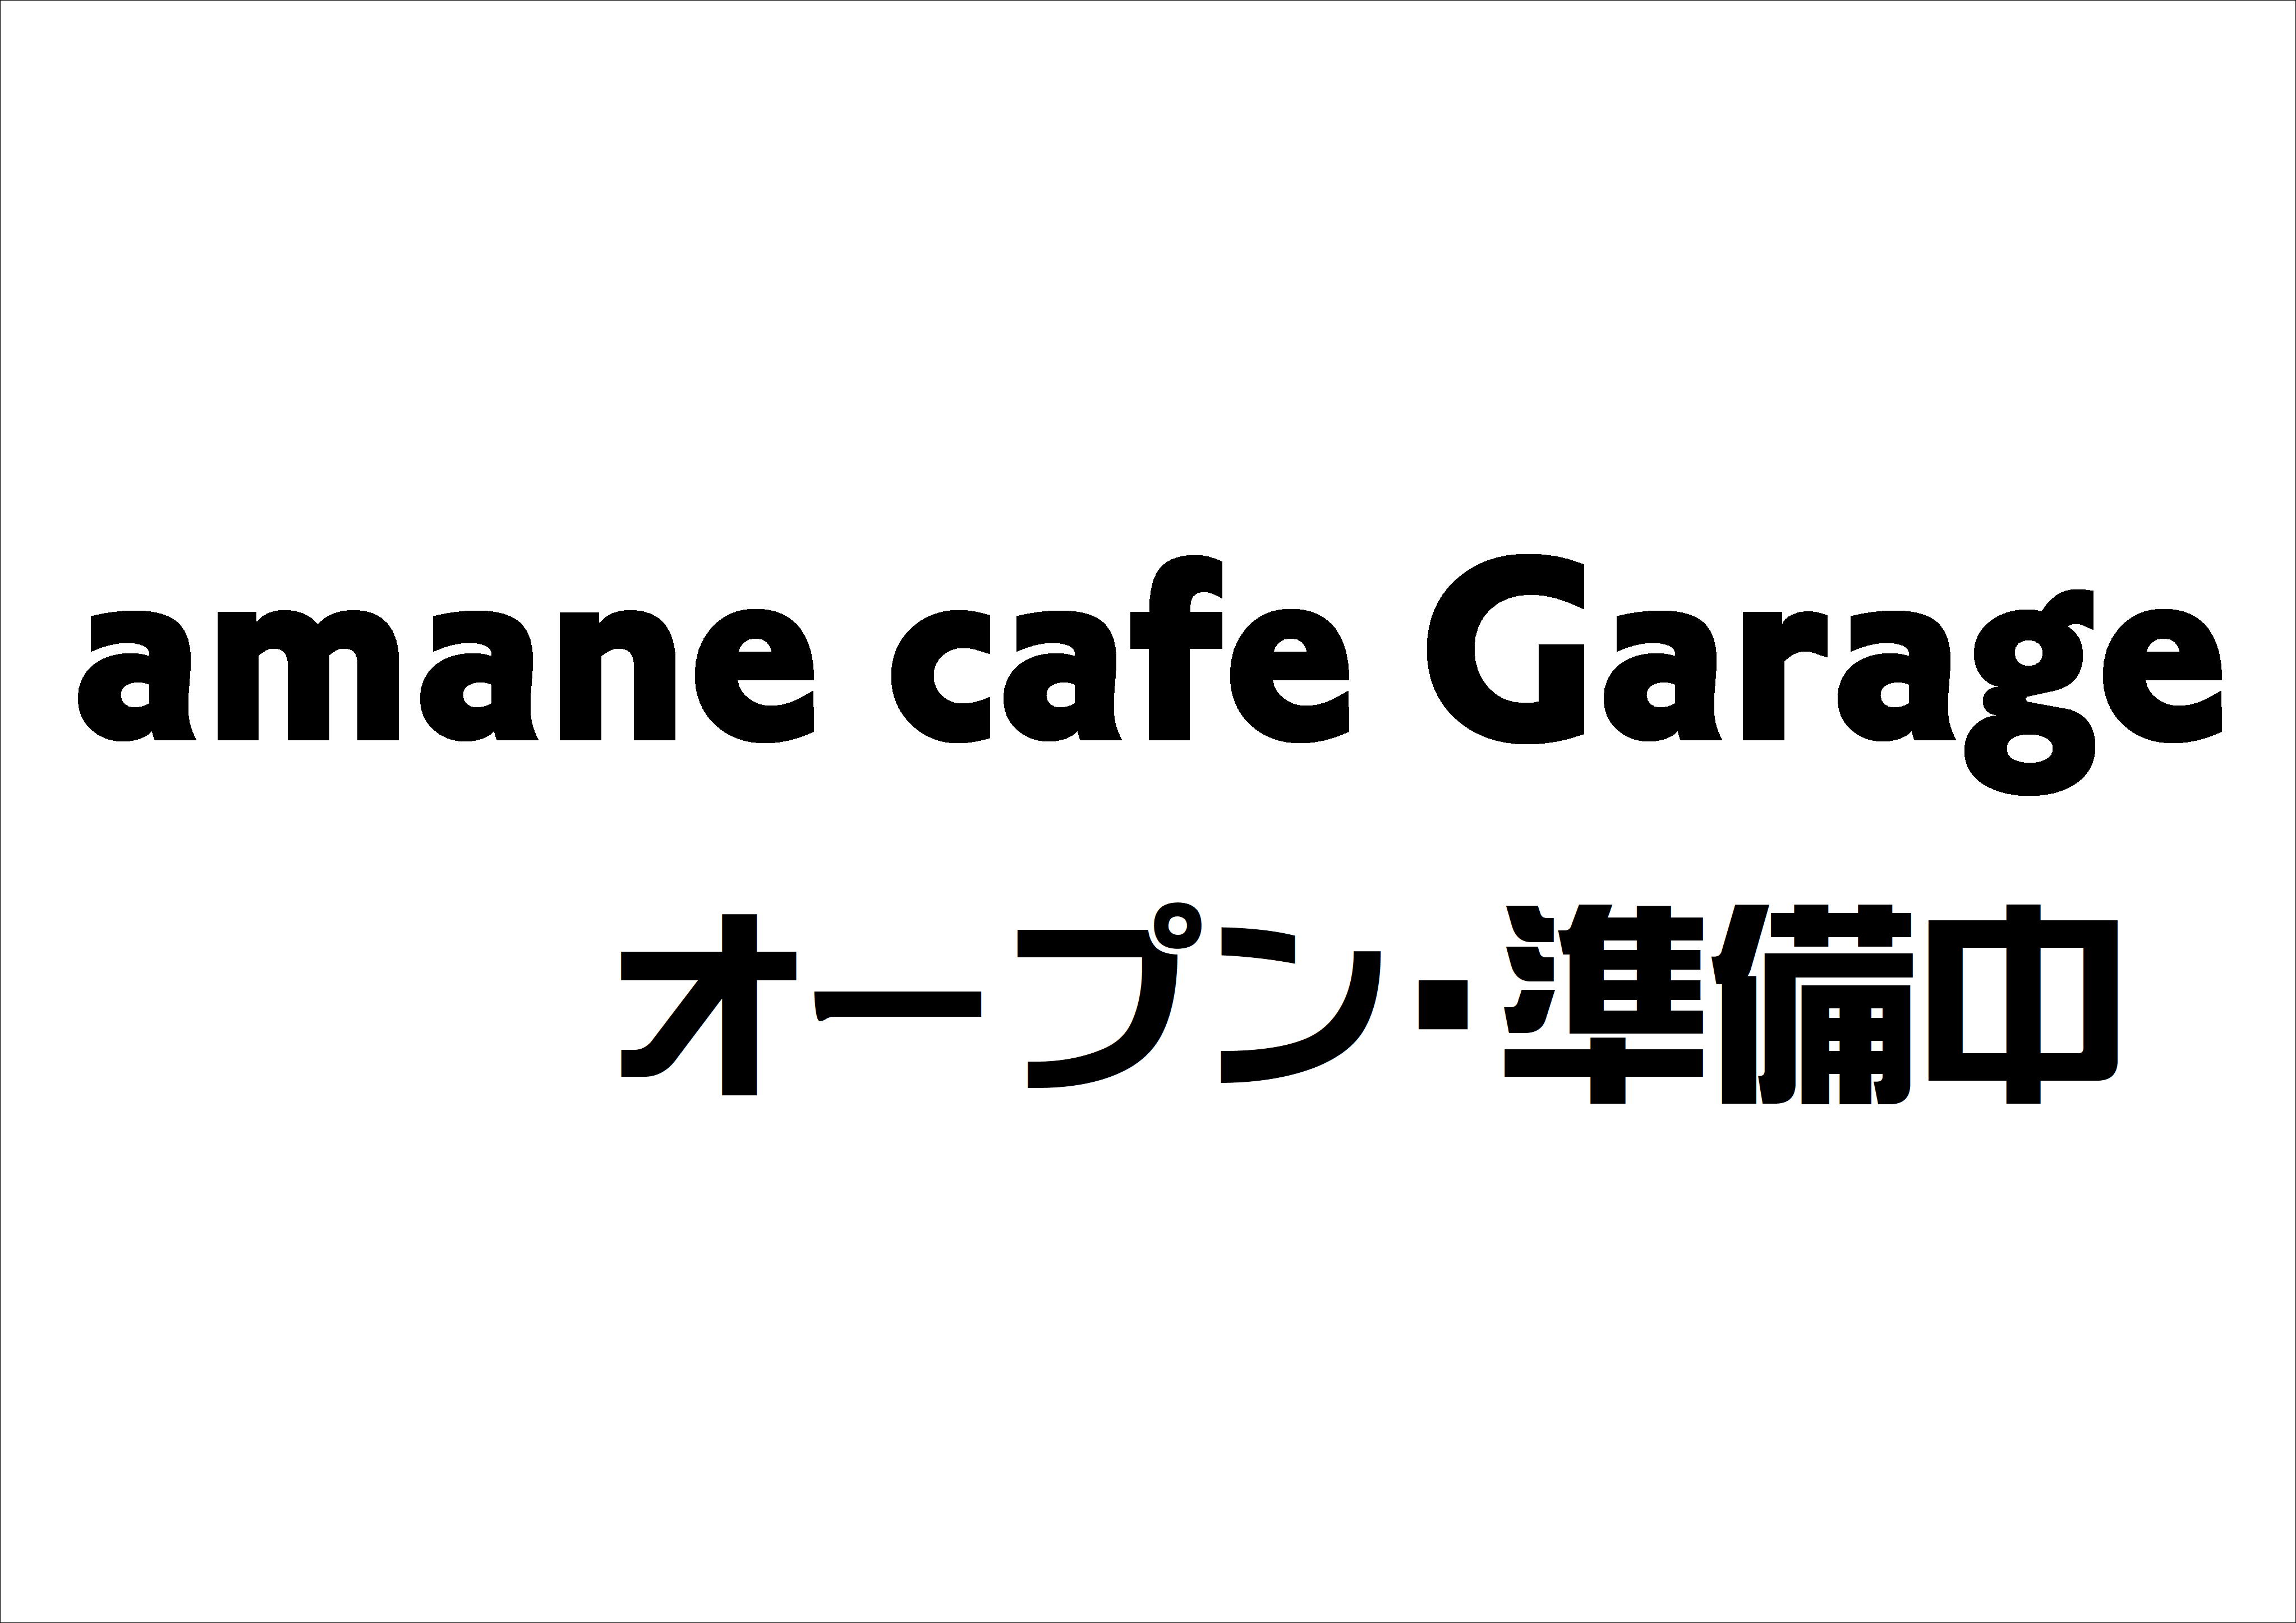 amane cafe Garage オープン決定のお知らせ